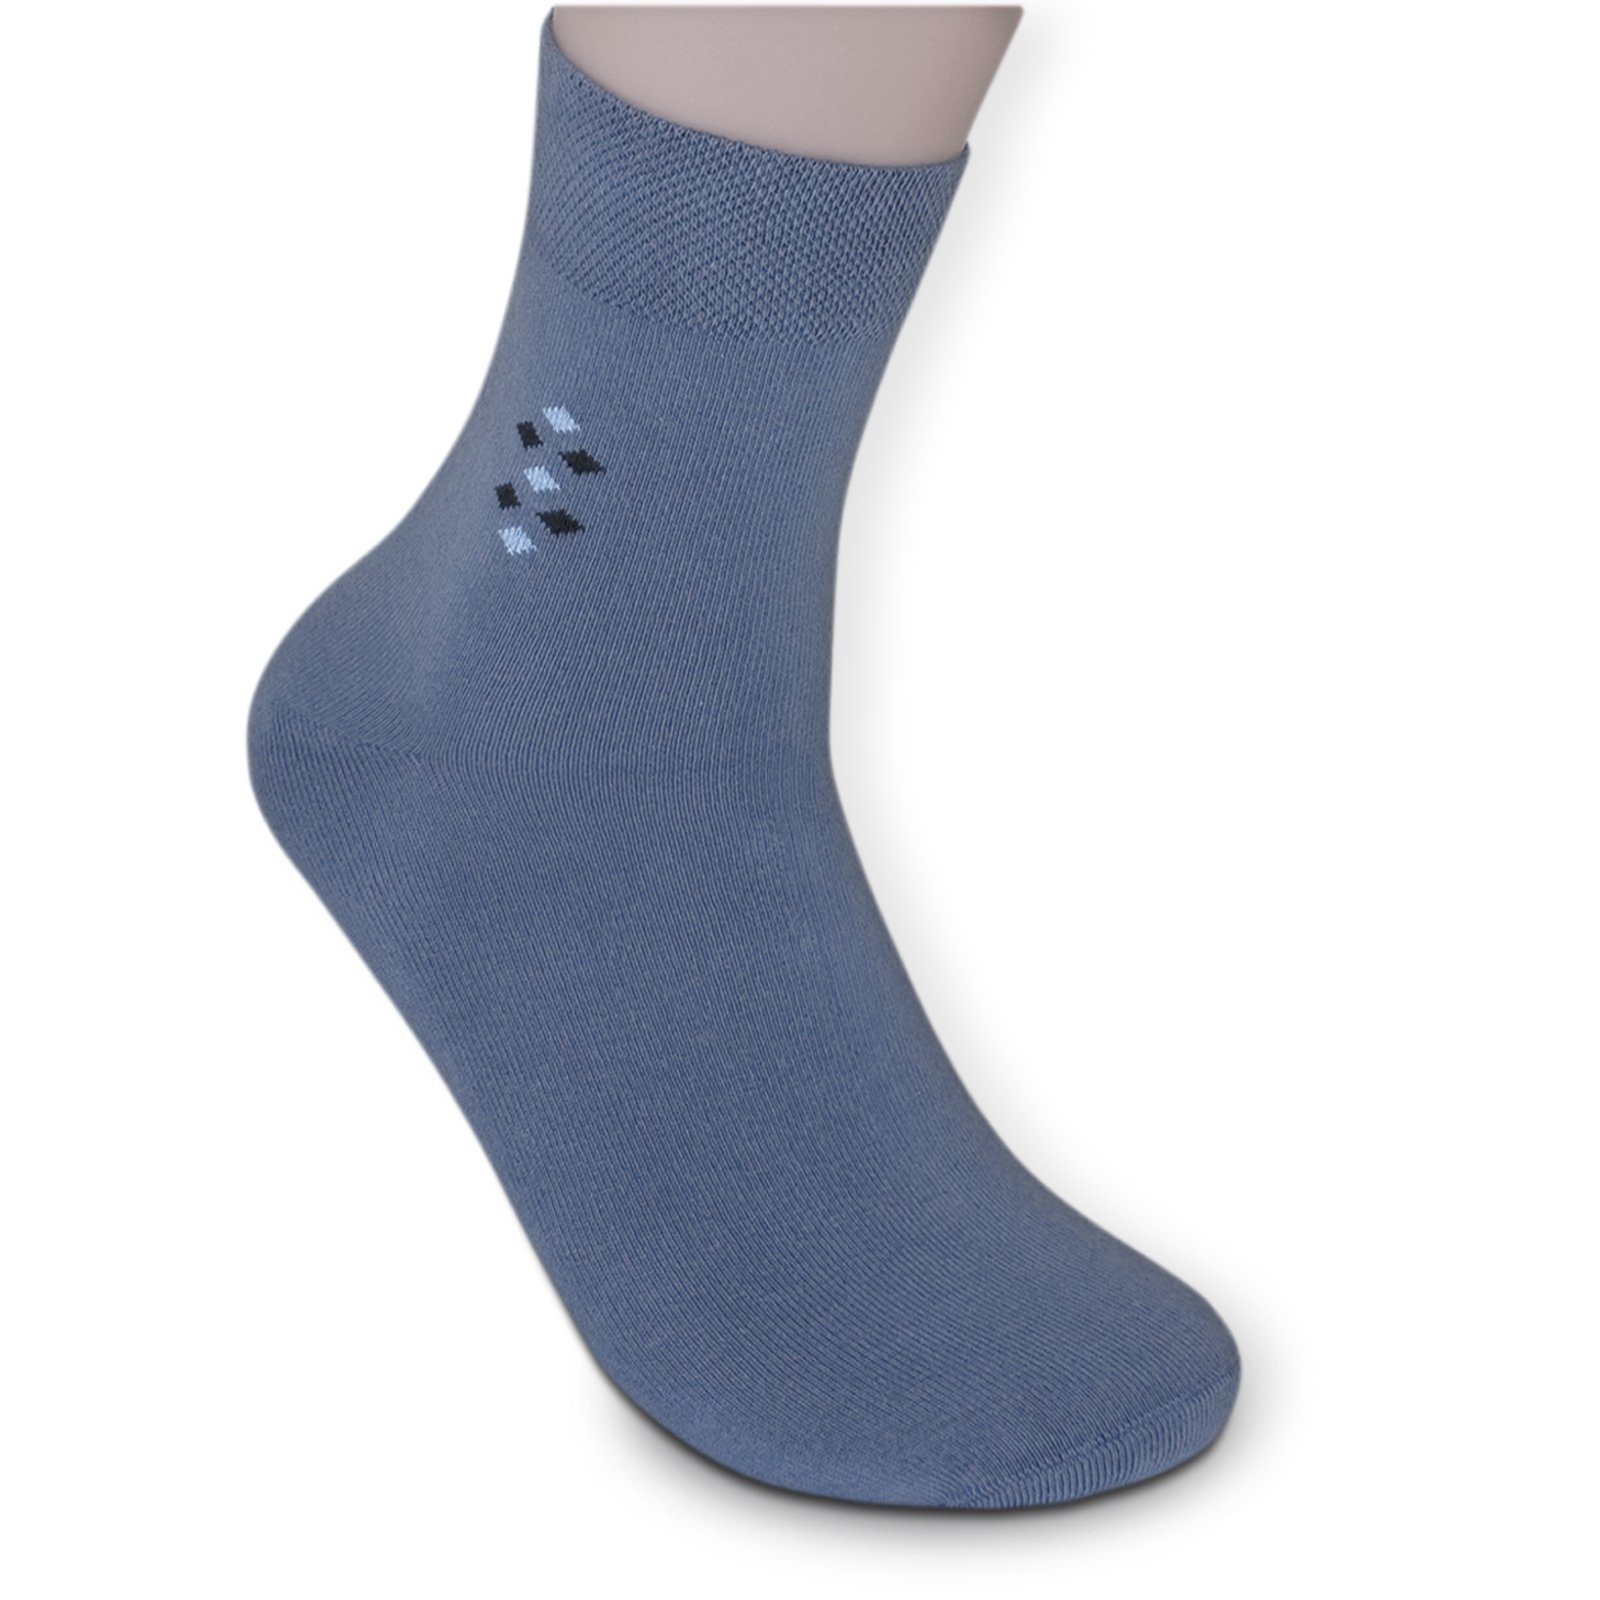 Gummi braun mit Kurzsocken (Bund, grau schwarz) blau Sockenbude Die Komfortbund ohne 5-Paar, KOMFORT